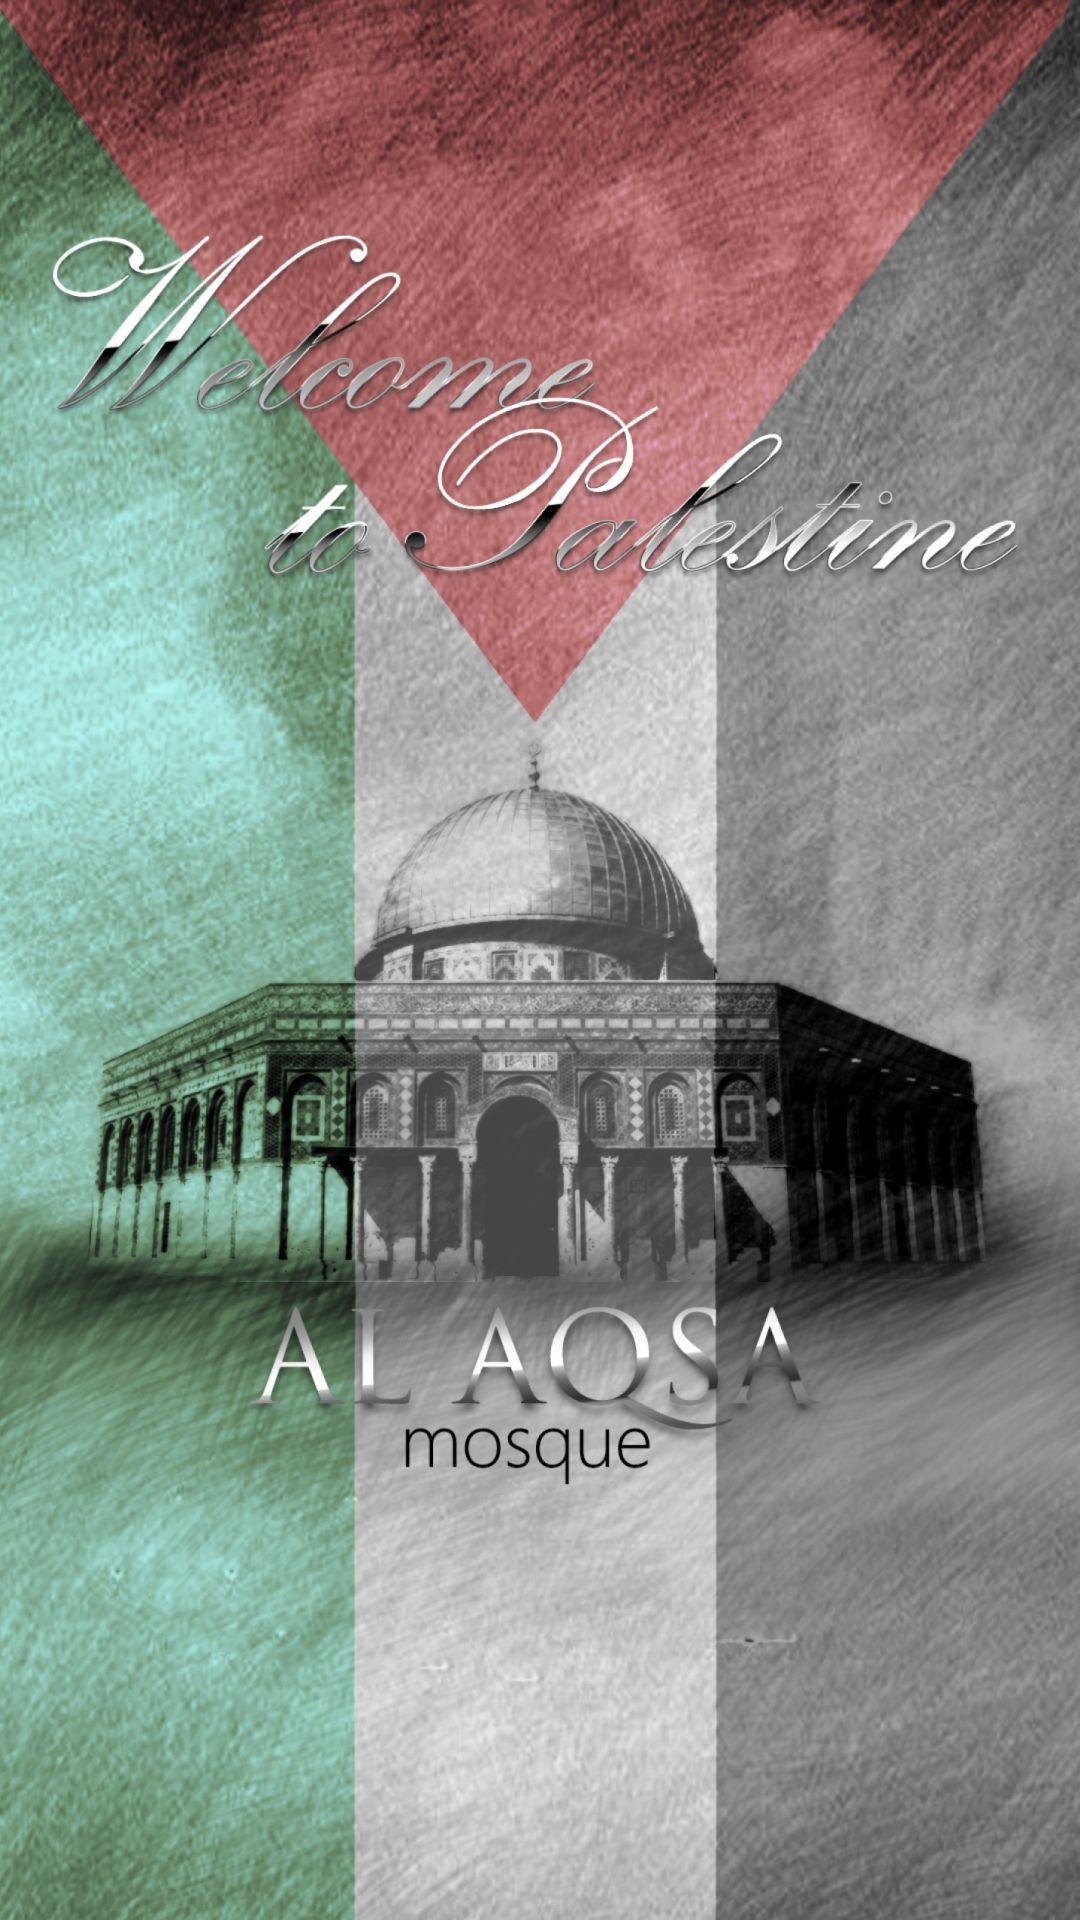 Al aqsa mosque jerusalem iphone 6 mobile wallpaper free. iPhone